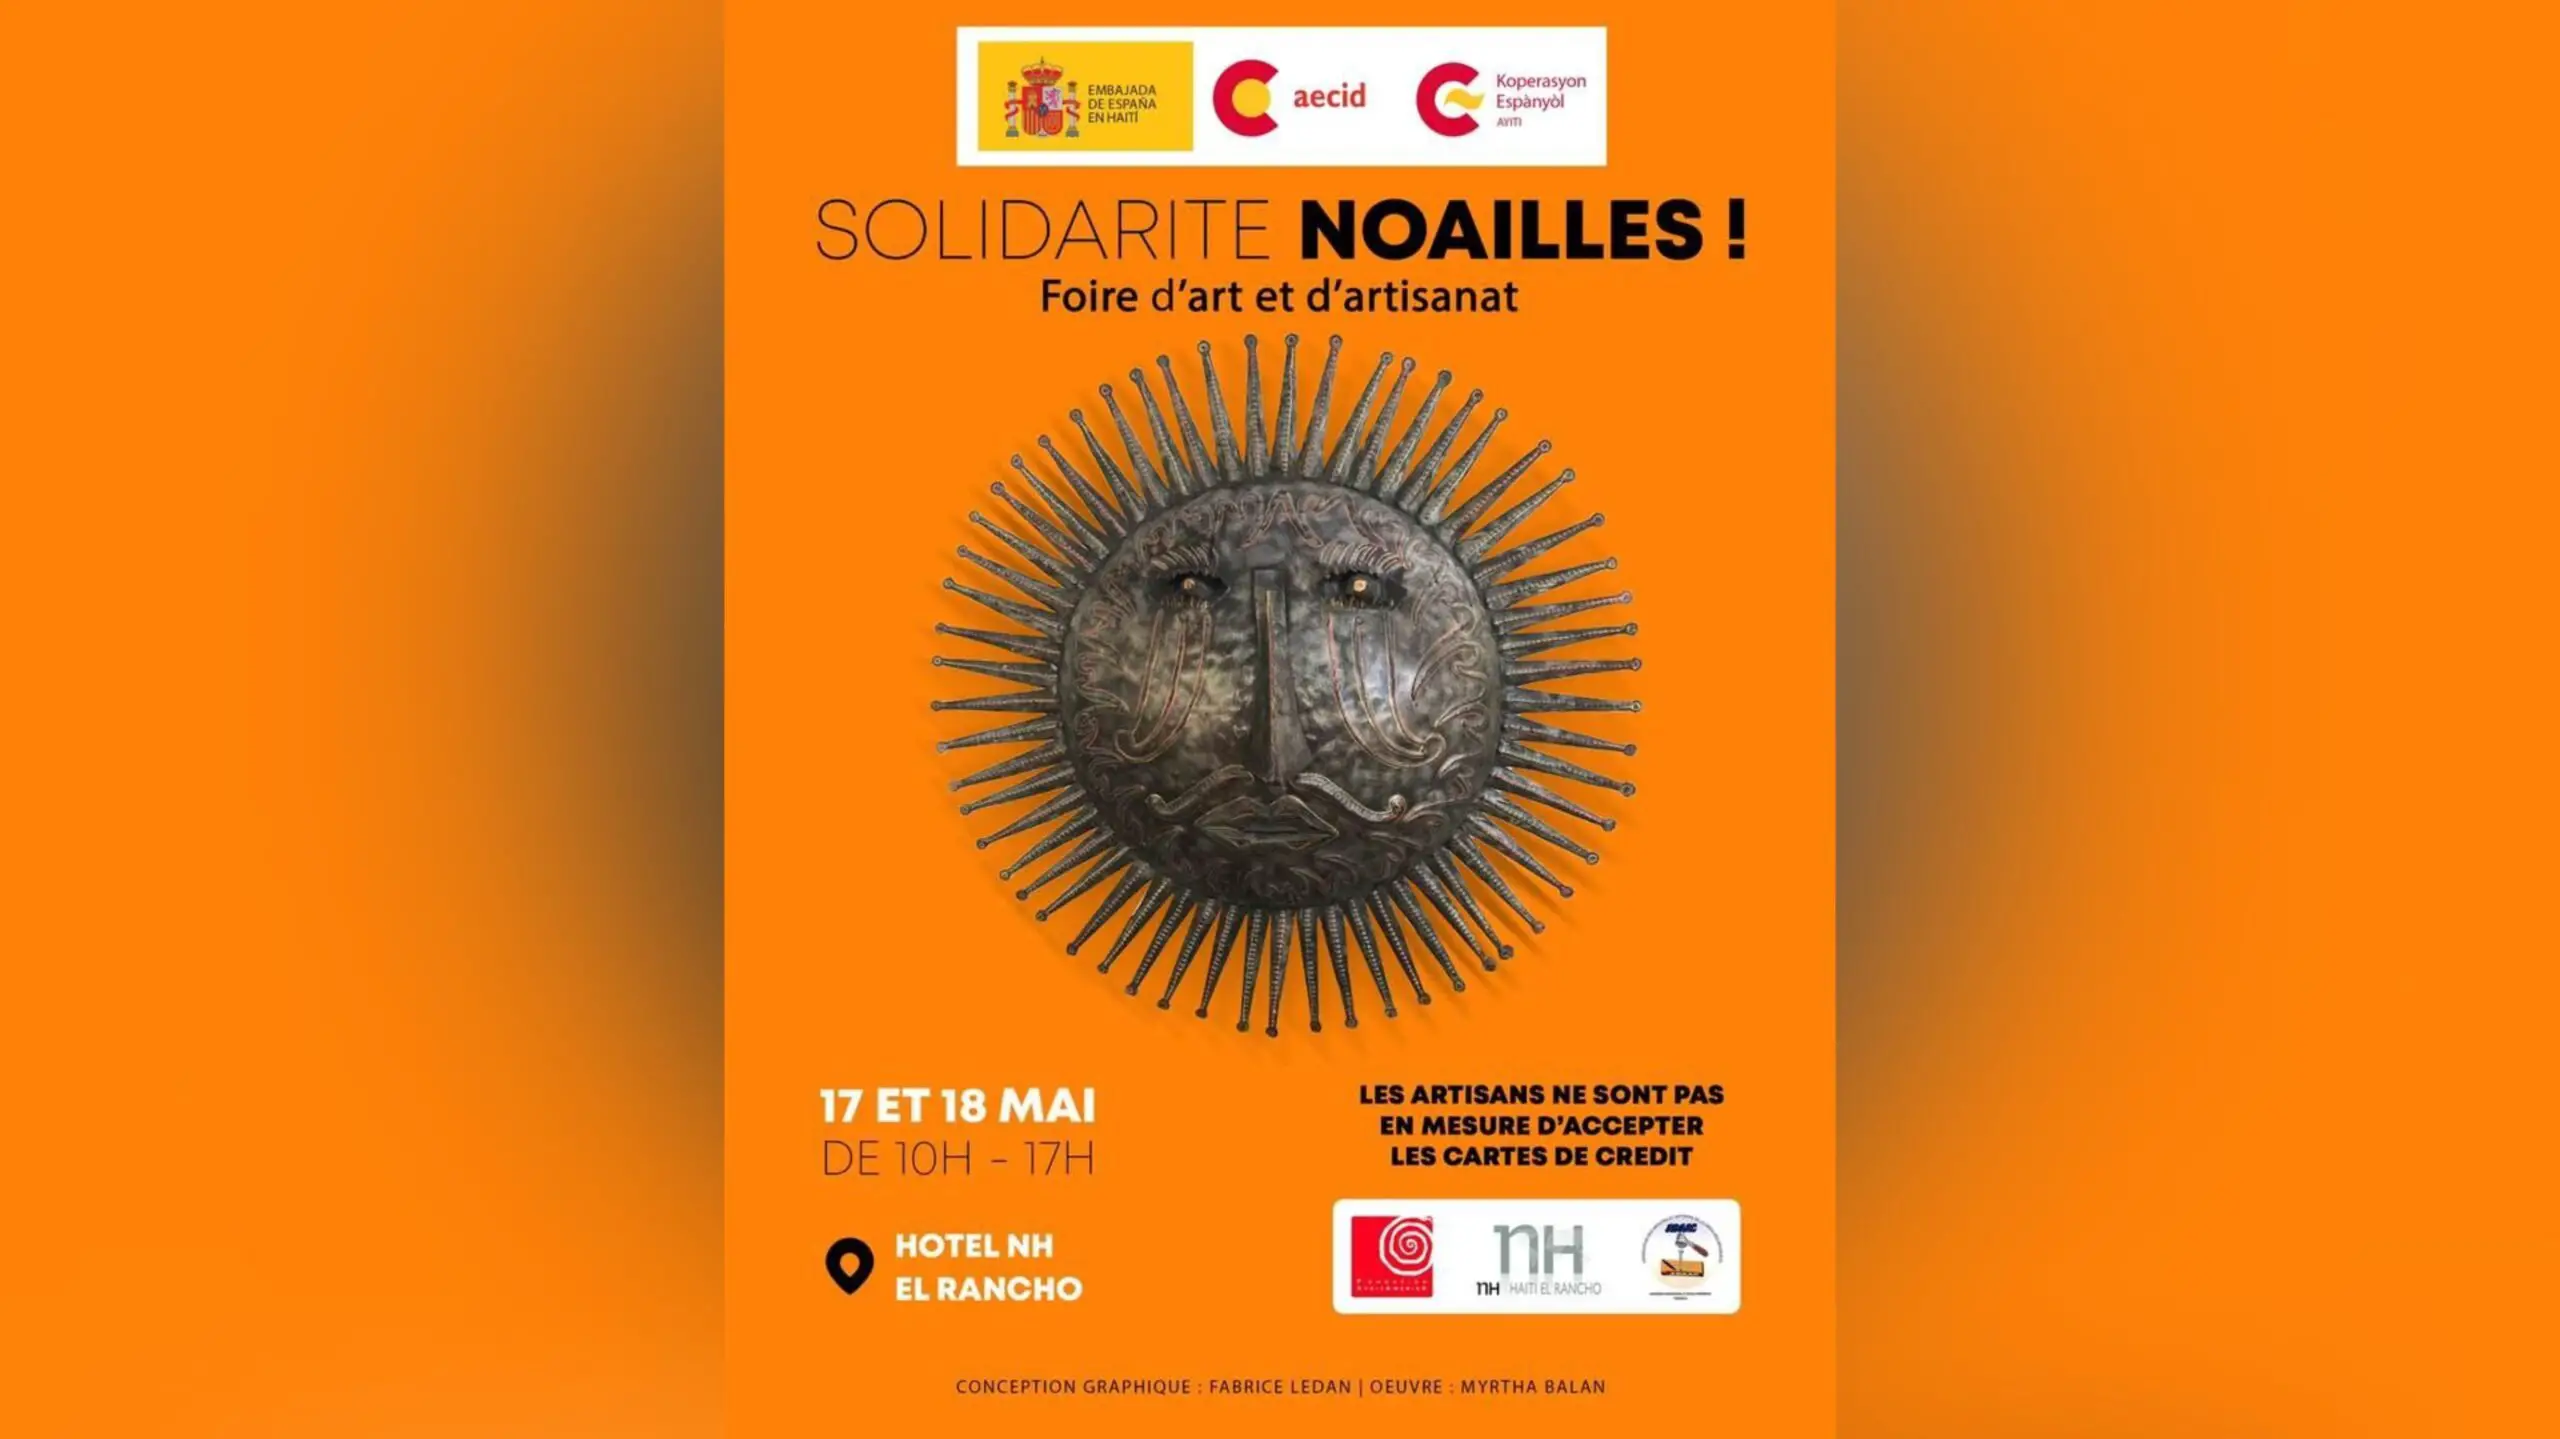 En solidarité avec les artisans de Noailles, l’ambassade d’Espagne en Haïti organise une foire à Pétion-Ville